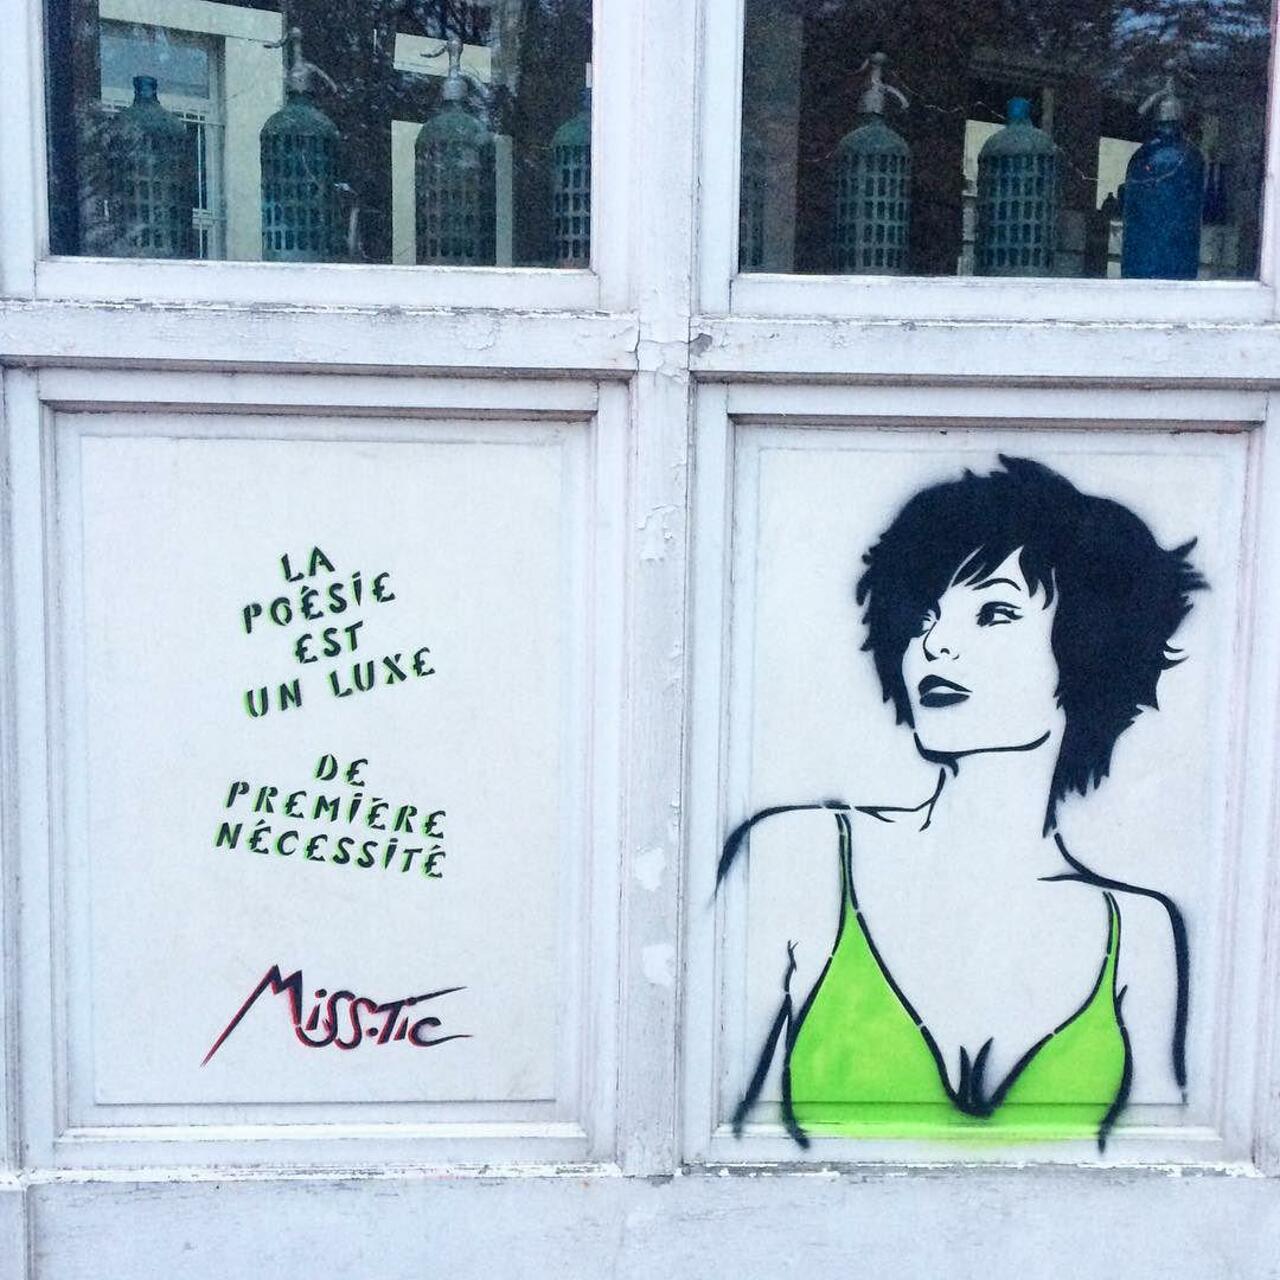 #Paris #graffiti photo by @benapix http://ift.tt/1NdT4qQ #StreetArt http://t.co/JydipdtvdT